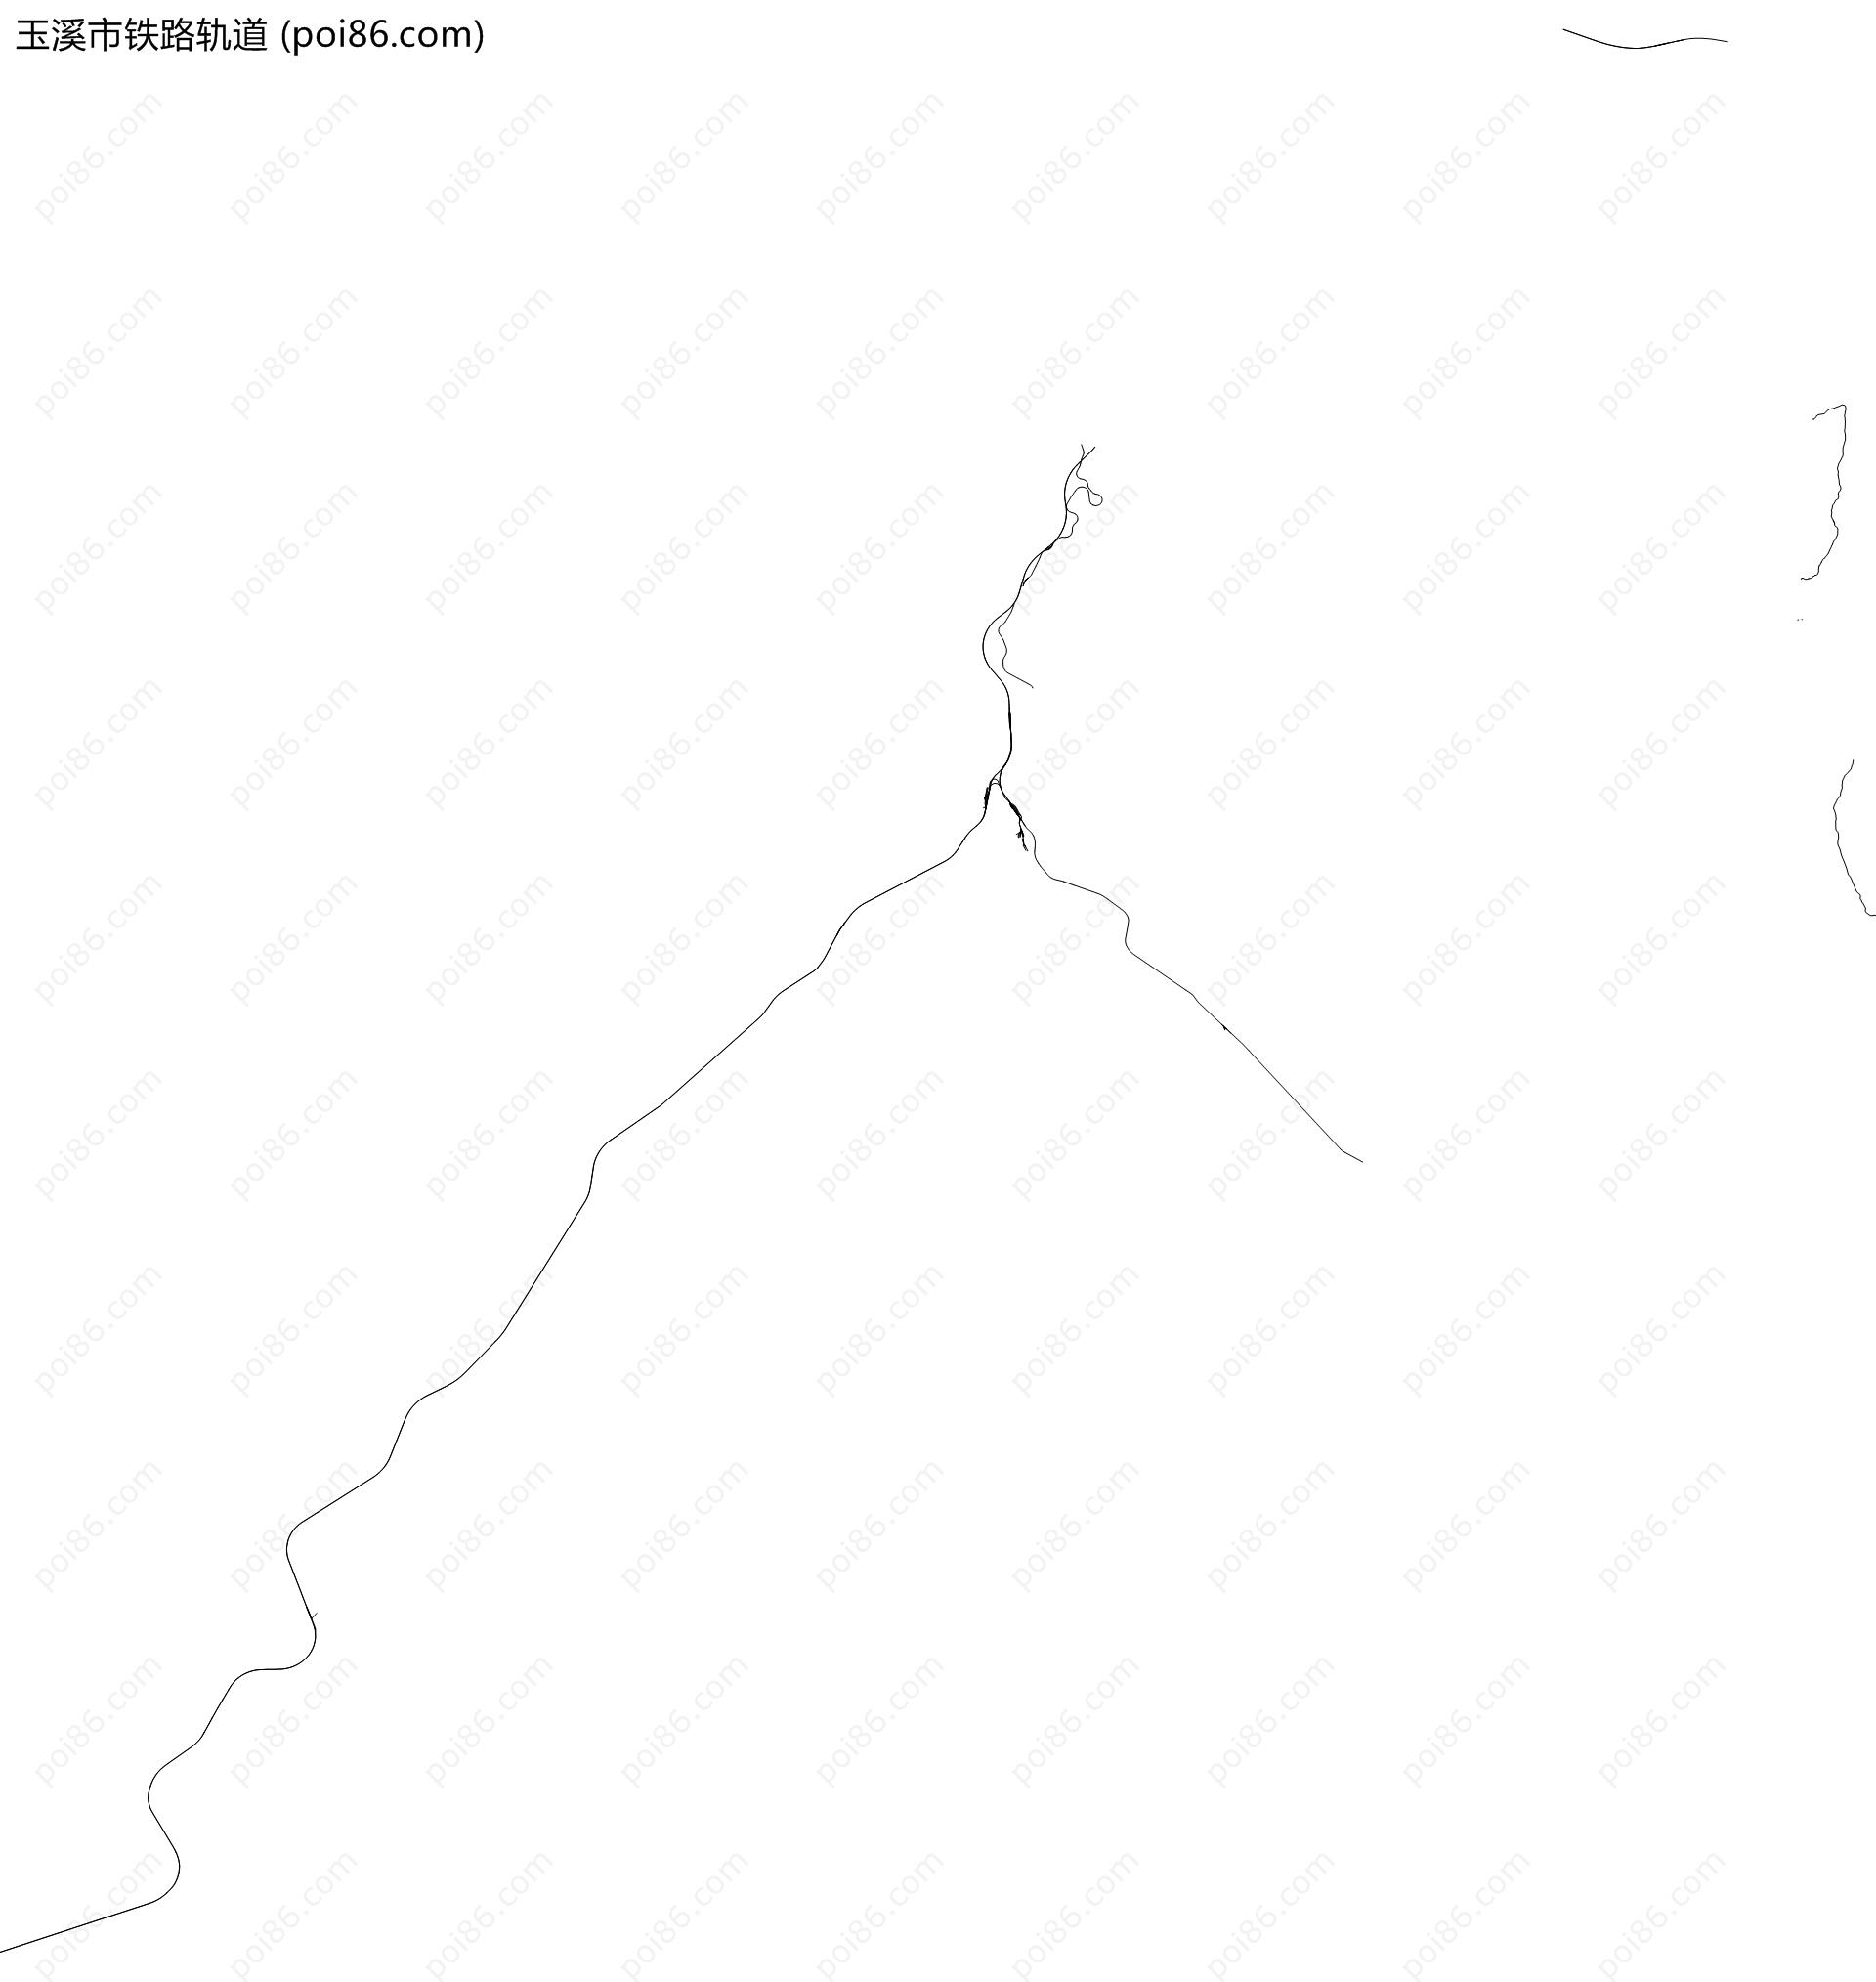 玉溪市铁路轨道地图